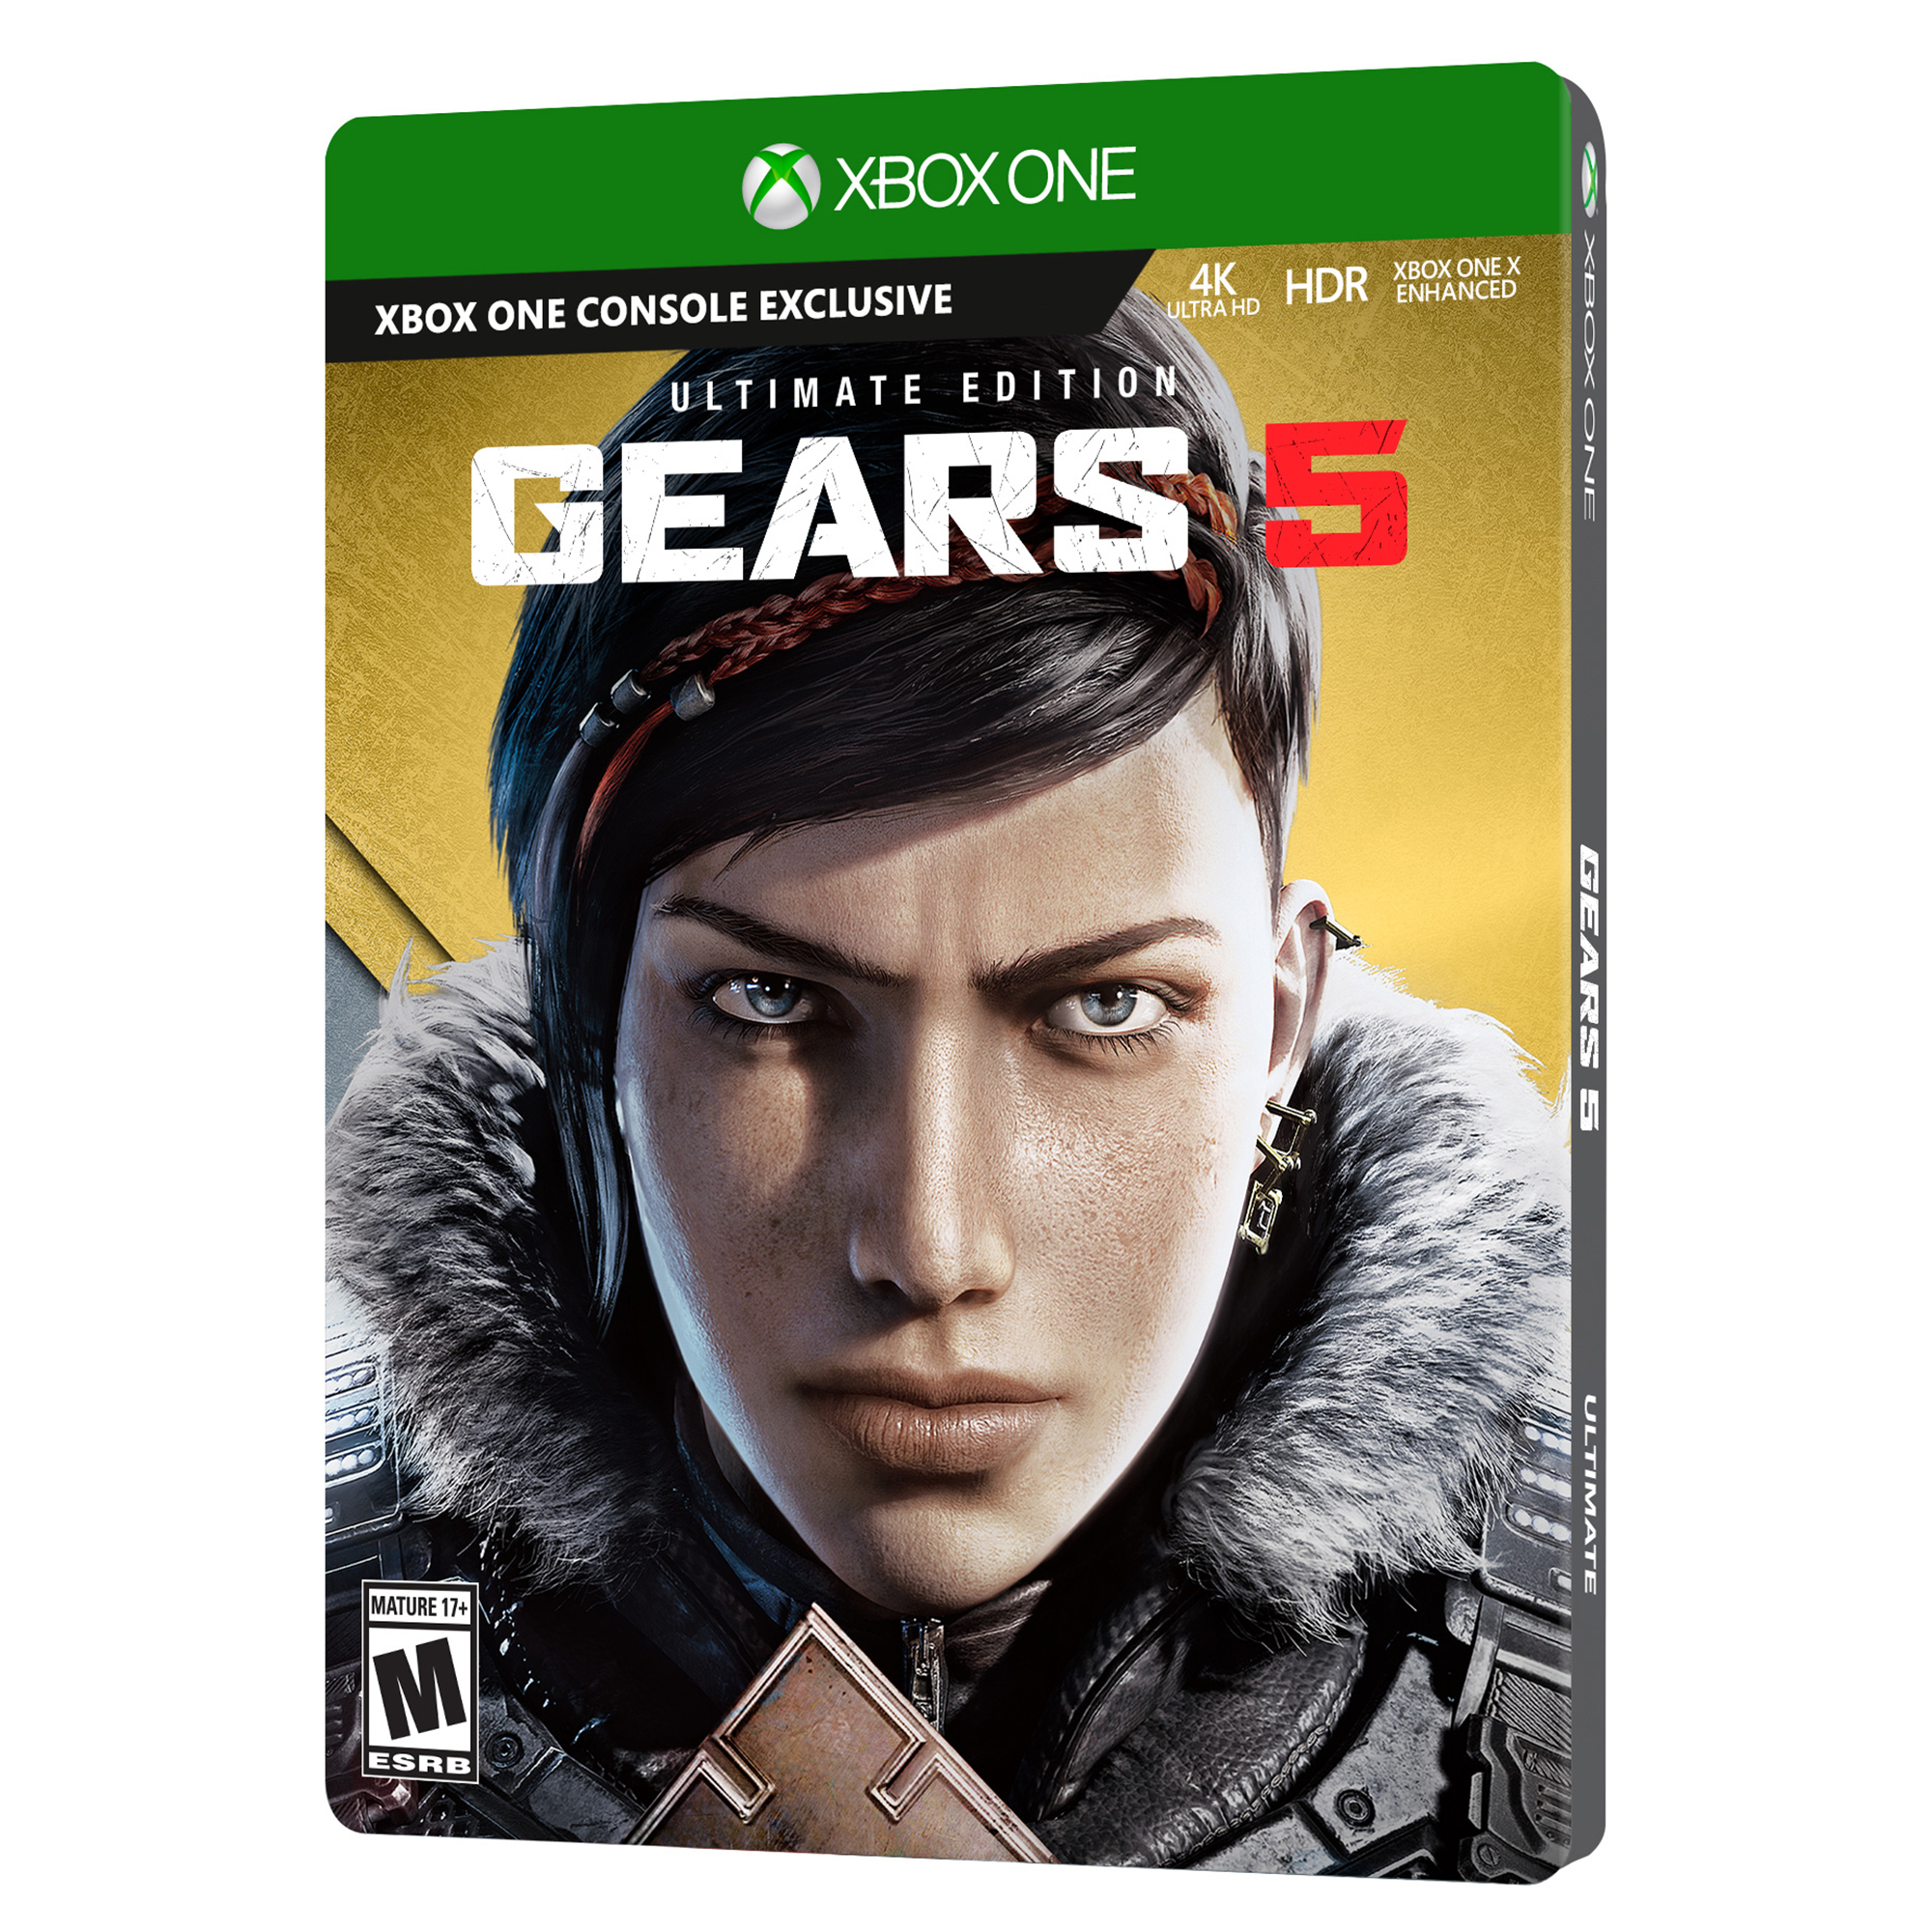 Best Buy: Gears of War Xbox 360 U19-00116